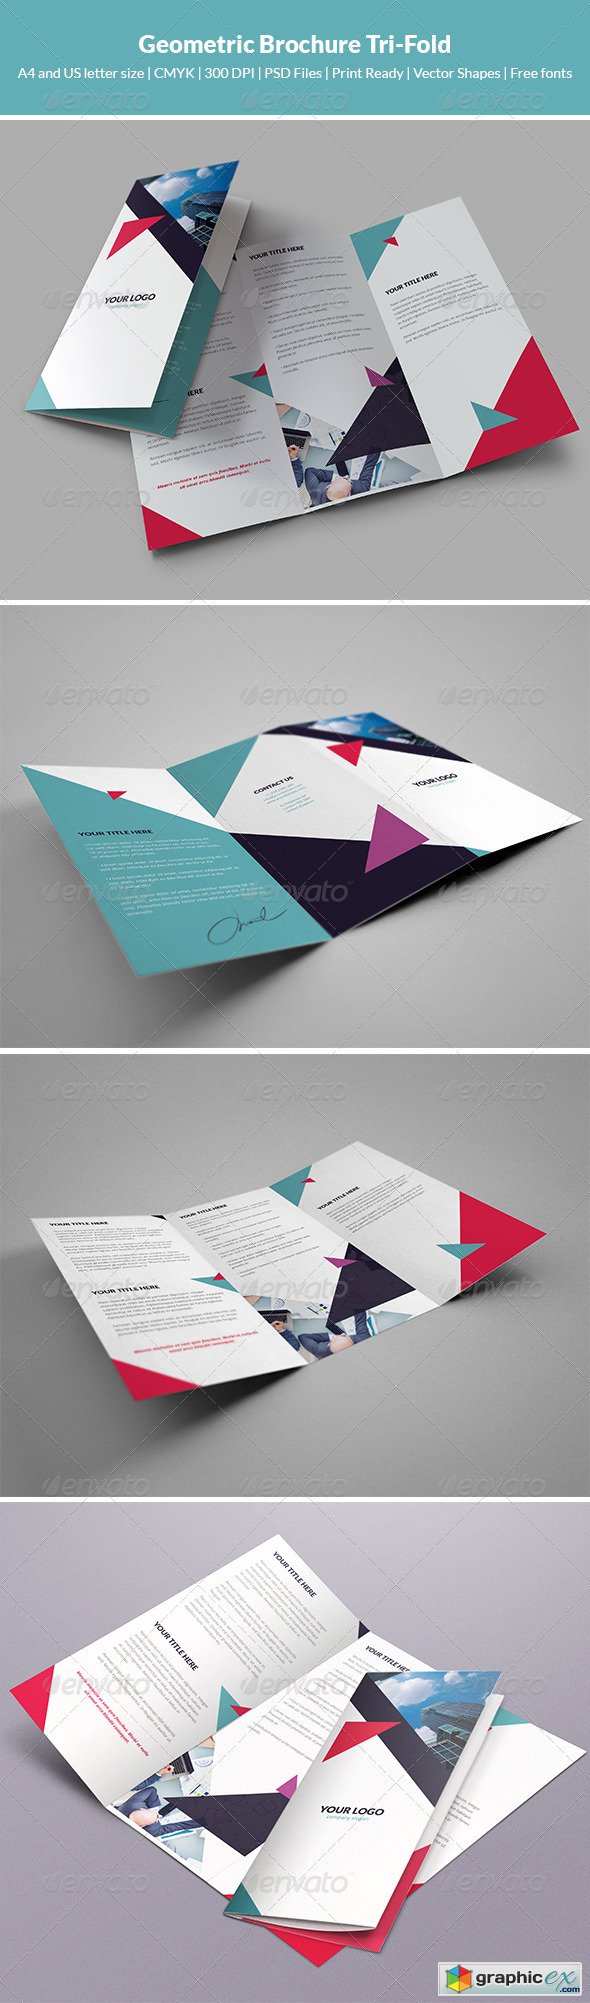 Geometric Brochure Tri-Fold